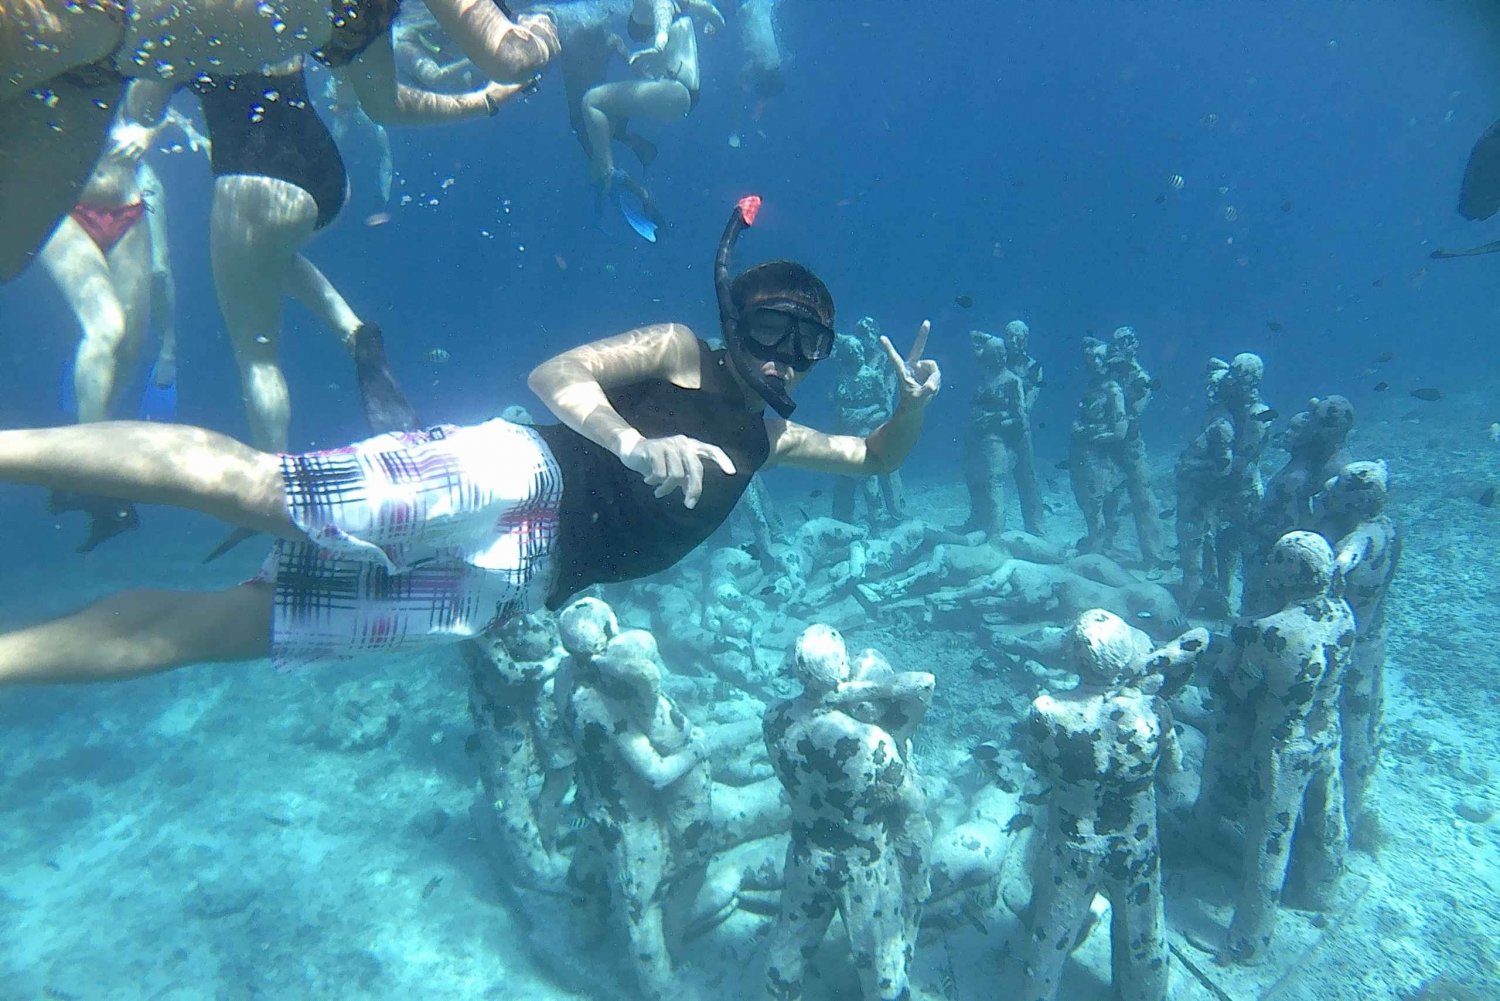 Lombok: Gili Trawangan, Meno, viagem de mergulho com snorkel no ar, incluindo almoço